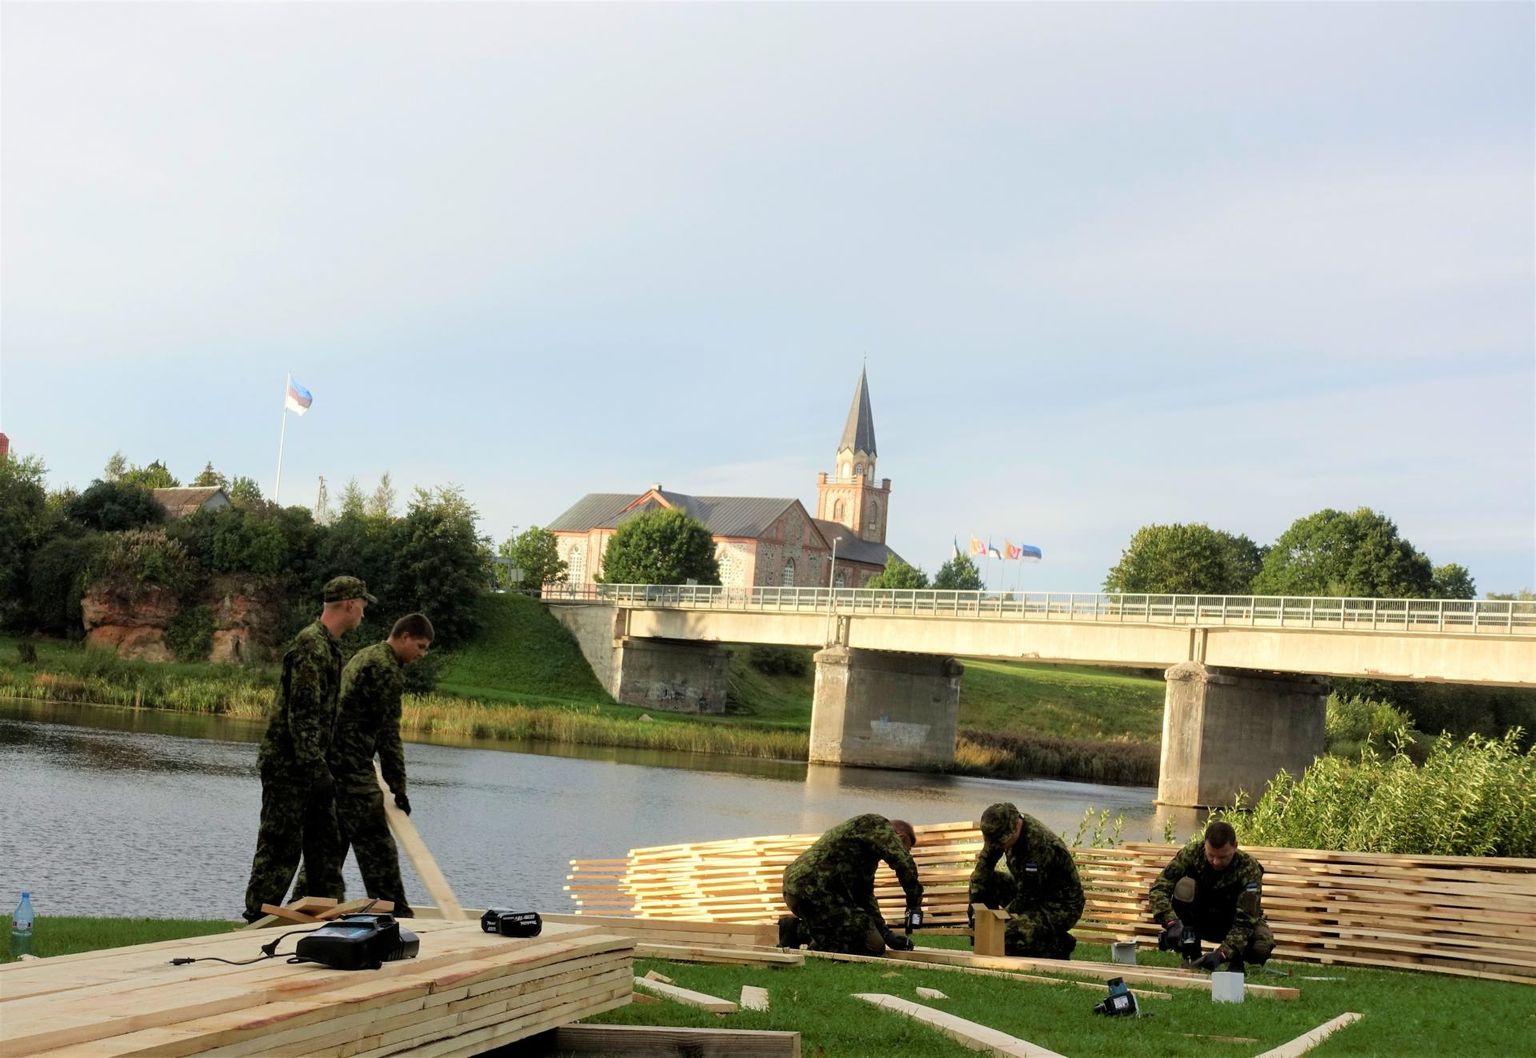 Kaitseväelased ehitavad Tori silla kõrvale ajutise silla.